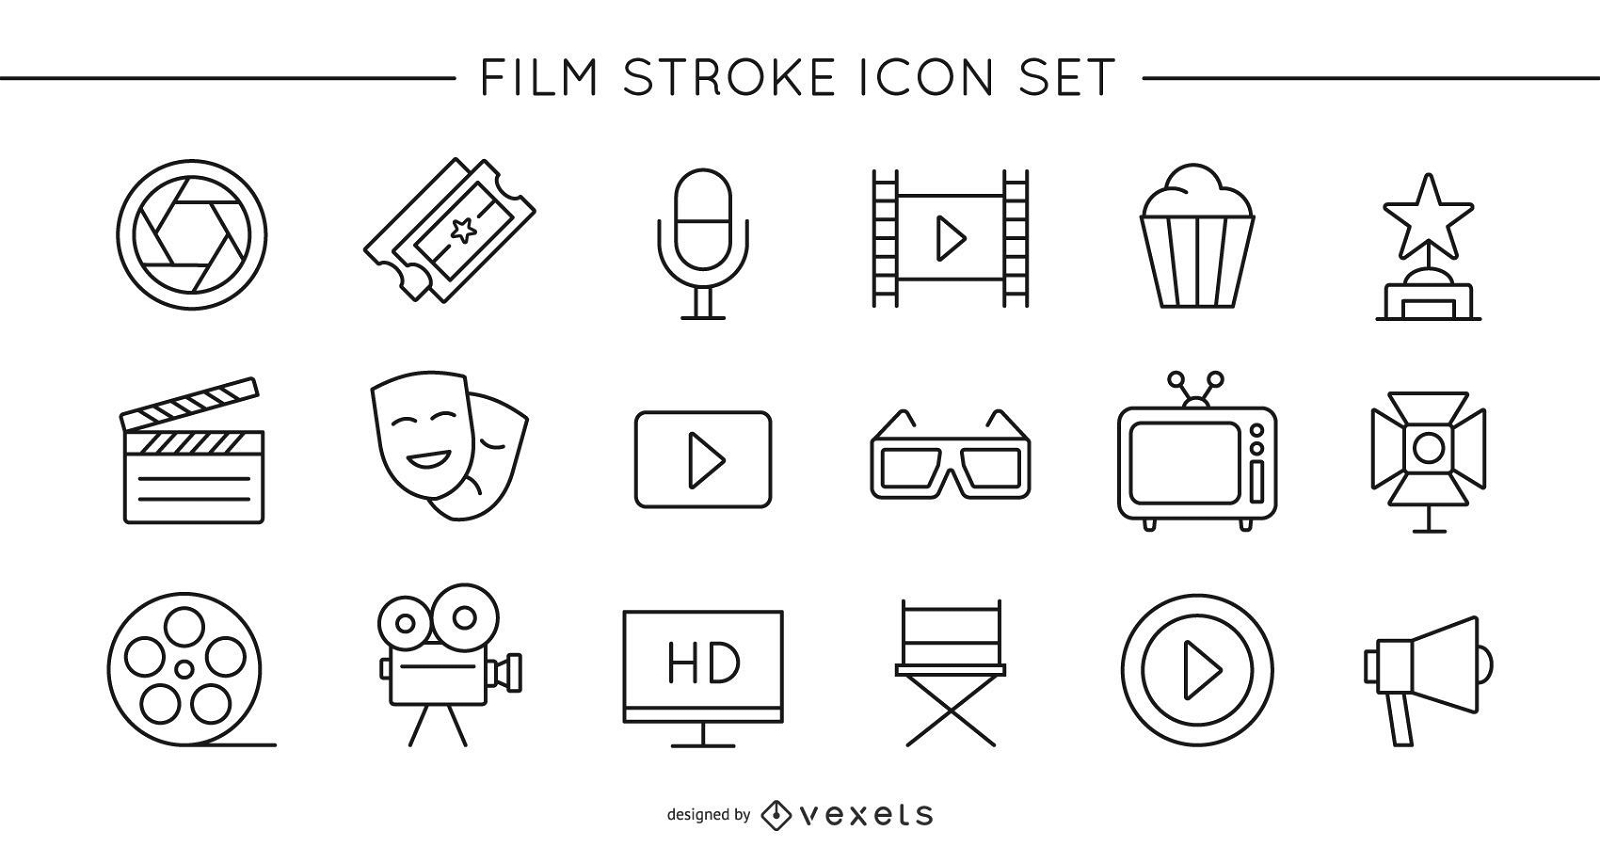 Film Stroke Icon Set